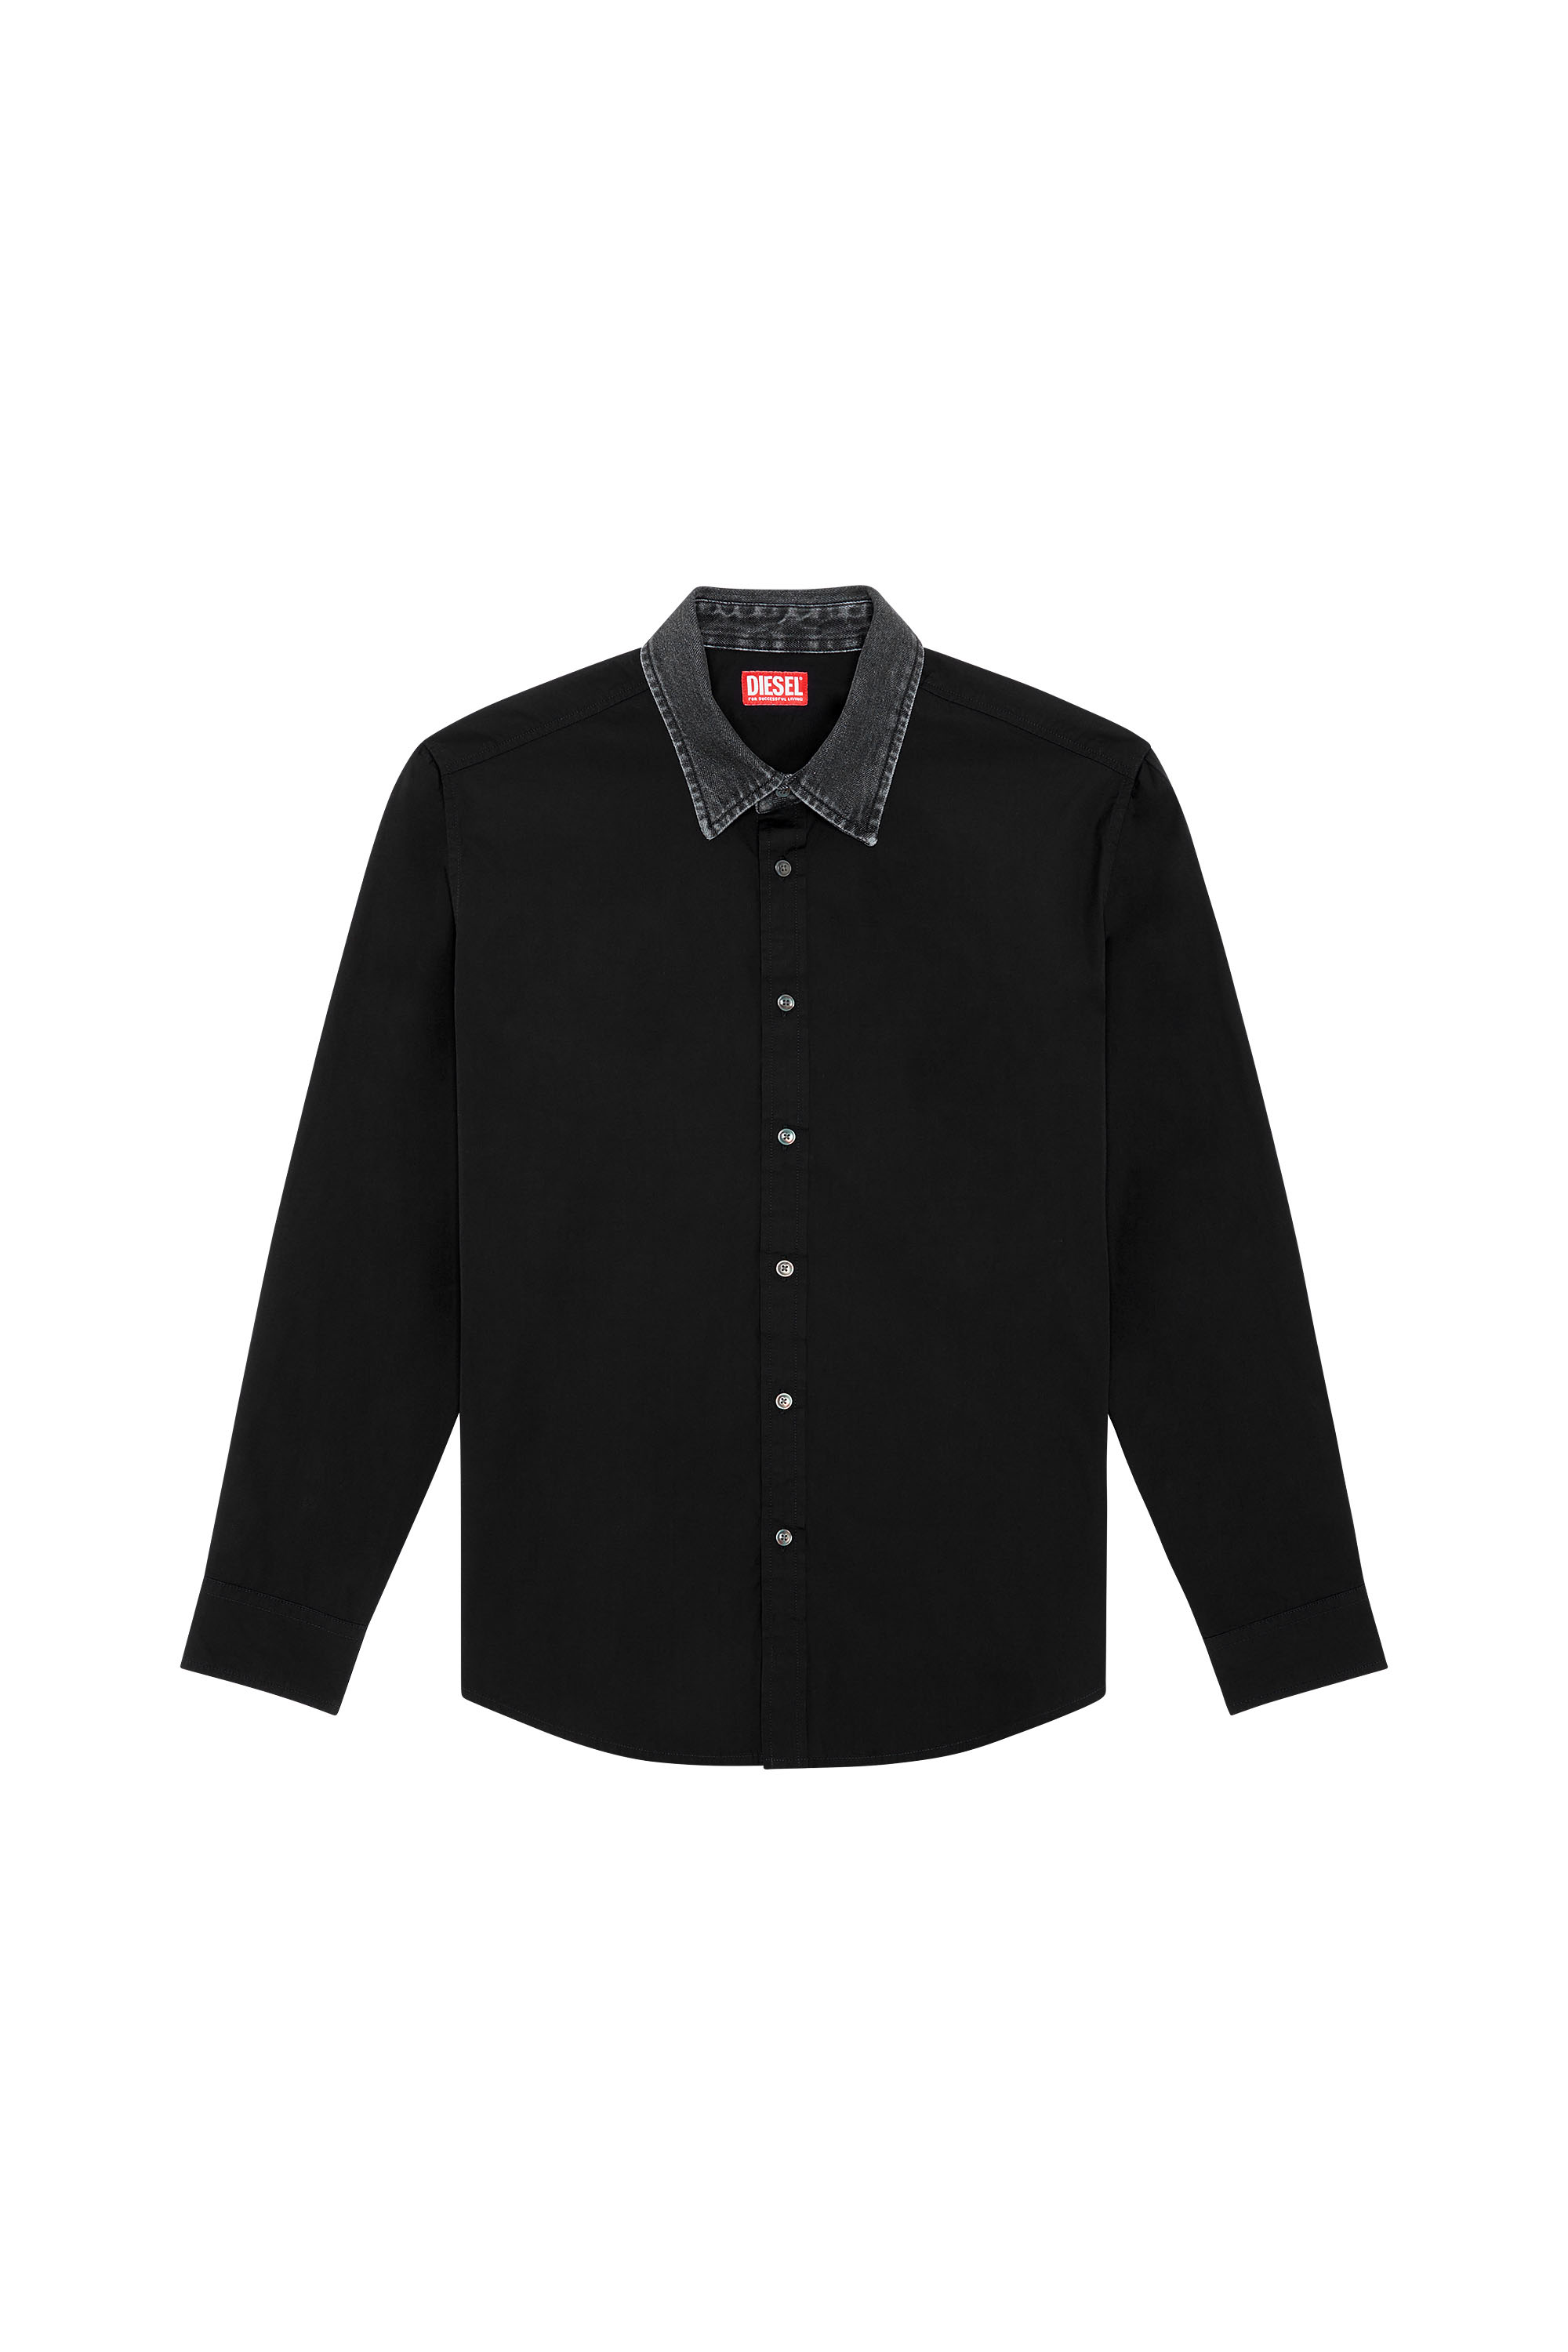 Diesel - S-HOLLS, Man Cotton shirt with denim collar in Black - Image 5